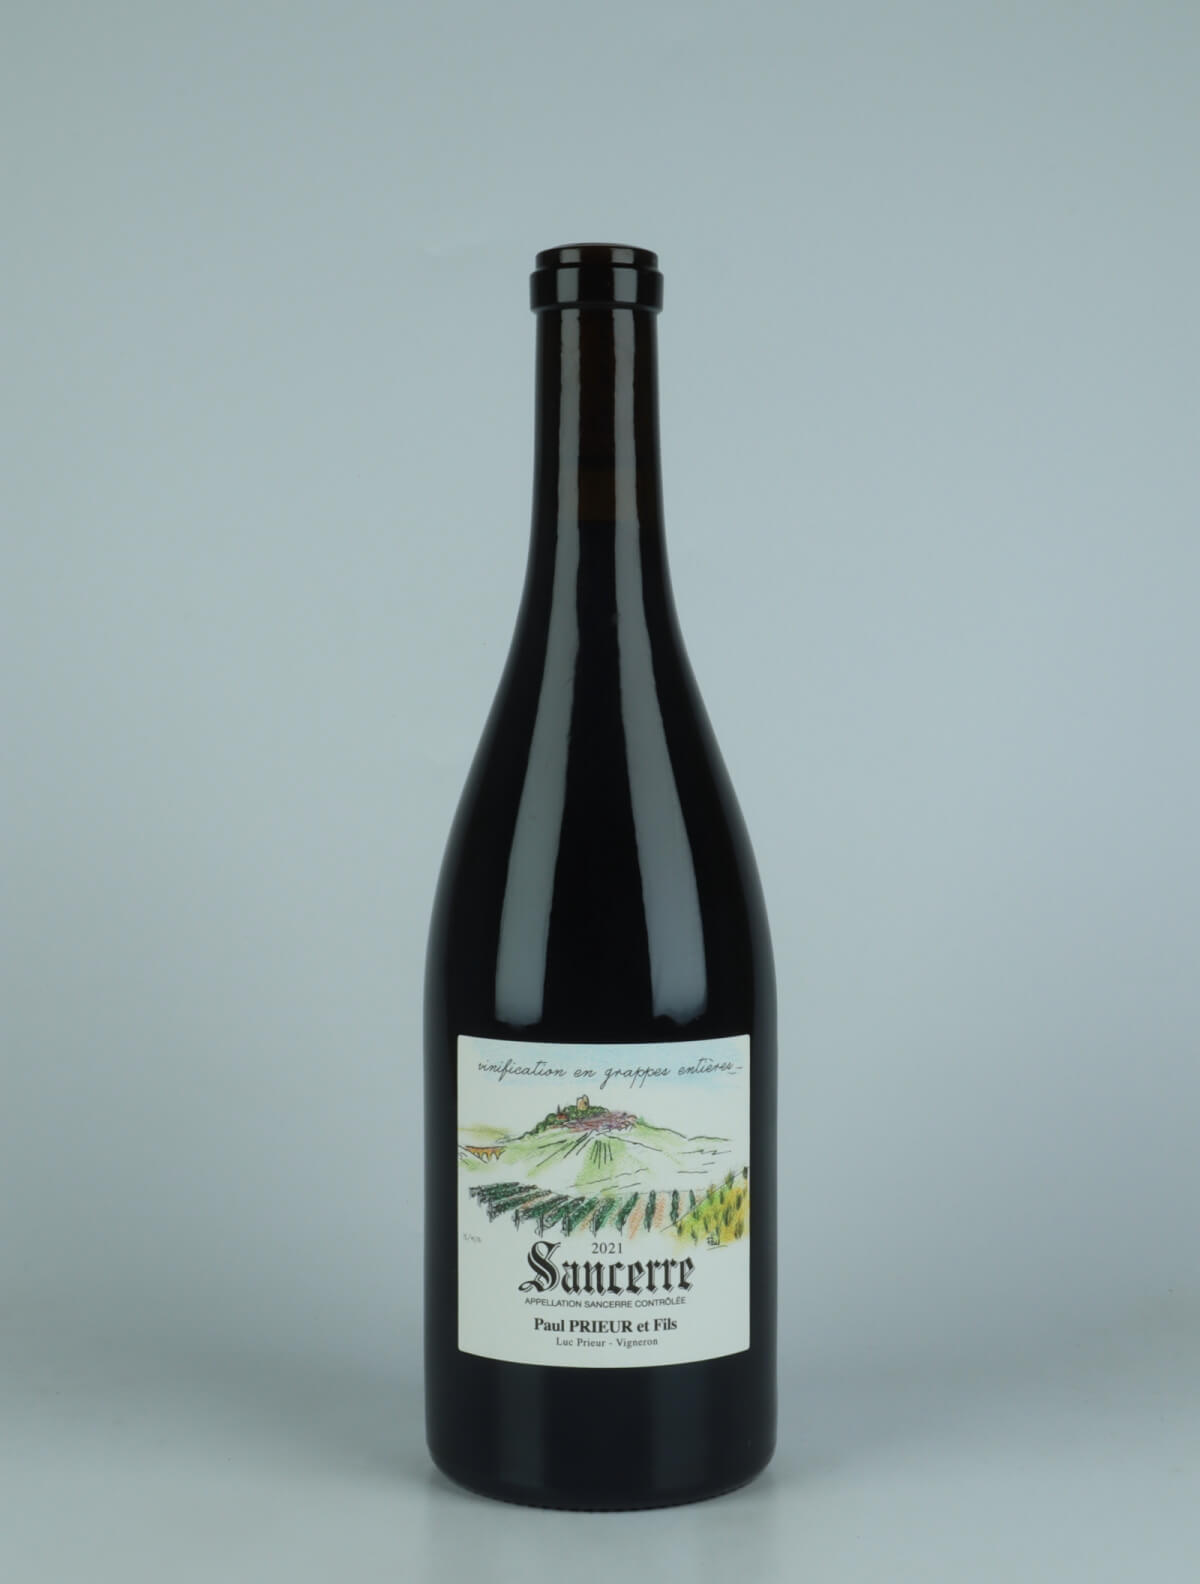 A bottle 2021 Sancerre Rouge - Vinification en Grappes Entières Red wine from Paul Prieur et Fils, Loire in France